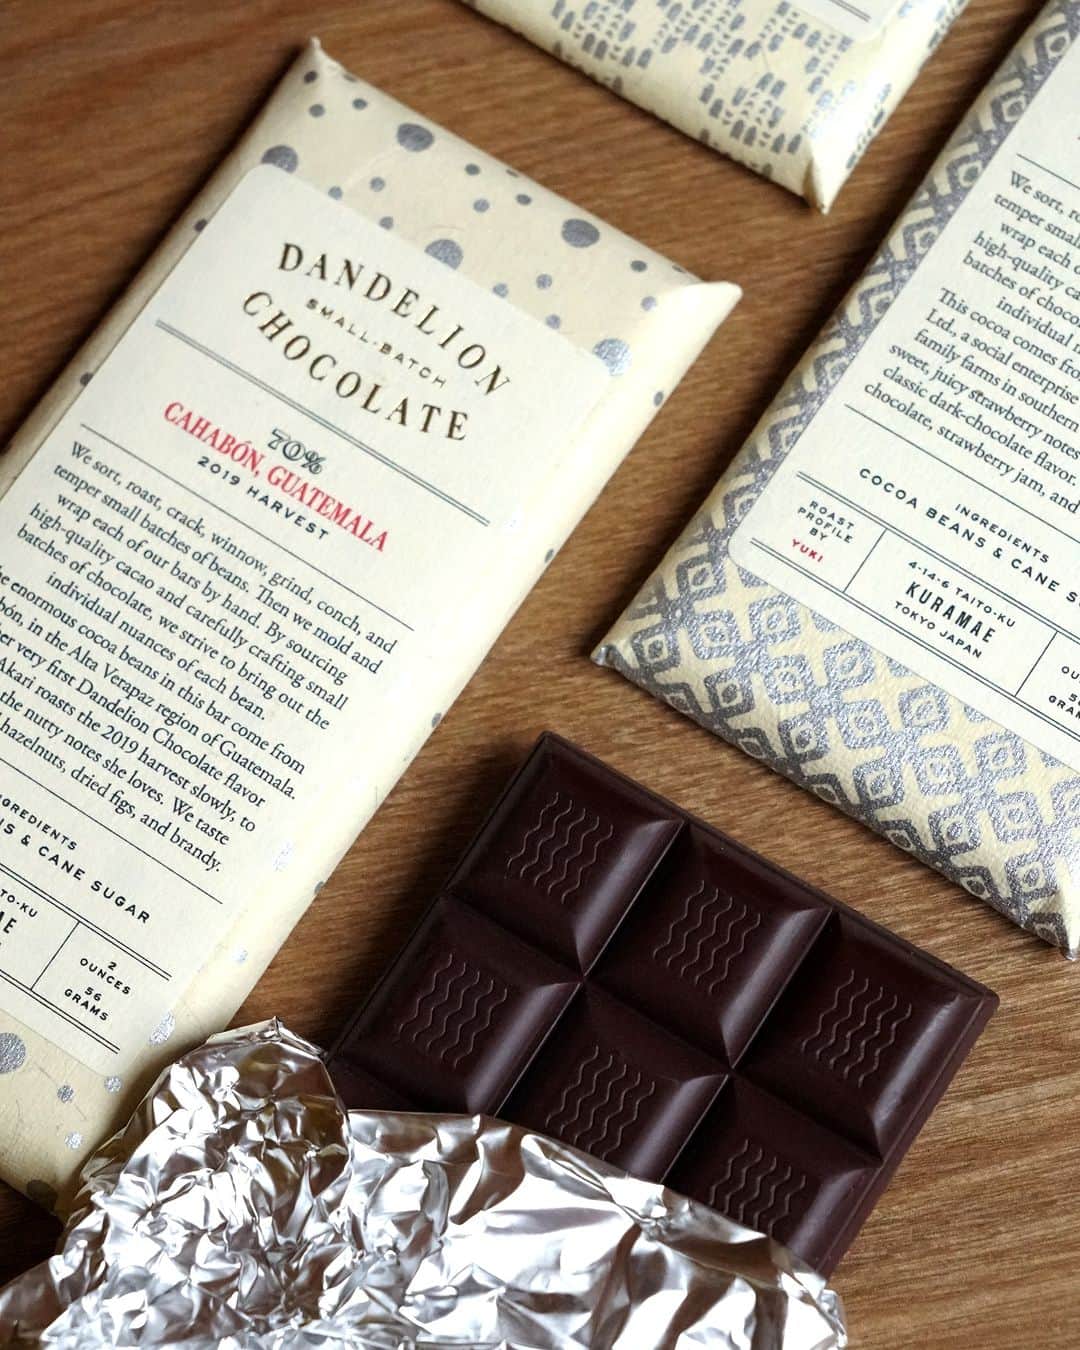 ダンデライオン・チョコレート・ジャパンのインスタグラム：「チョコレートの「酸味」と「苦味」とは、どういう感覚？  チョコレートの味を表現するときに よく使われる「酸味」と「苦味」。  言葉だけ聞くと、一般的な「すっぱい」「苦い」 といった味を思い浮かべますが、 チョコレートに関しては もう少し複雑な味を表現しています。  🍫酸味 チョコレートの酸味は、 果実感の中でも柑橘系、ベリー系などさまざま。 また、ヨーグルトのような乳酸味や、酢酸味もあります。 思わず口をすぼませてしまう「すっぱい」だけではない、 さまざまな酸味の種類を感じることができるでしょう。  🍫苦味 苦味は、カカオ含有量が多いチョコレートで 多く使われる表現で、 「ビター」と表現されることもあります。 カカオ含有量が多い＝苦味が強い、ということではなく、 カカオのフレーバーをより強く感じることができるでしょう。  チョコレートの味わいは、 そのときの自分の気持ちや体調、 気候によっても変わります。  「これが正解」というのはないので、 まずはひとかけら食べて「美味しい」と思って 笑顔になっていただけると嬉しいです。  ダンデライオン・チョコレートでは、 常時7〜8種類前後の チョコレートバーを販売しています。  ぜひご自分や贈る相手の好みにあったチョコレートを 見つけてみてください。  ＊チョコレートバーのご購入はプロフィールリンクから @dandelion_chocolate_japan  ======  チョコレートバー各種 価格：1,400円（税込） 販売店舗：オンラインストア、ファクトリー＆カフェ蔵前、伊勢外宮店、The Market 吉祥寺  ======  #dandelionchocolate #ダンデライオンチョコレート #beantobar #ビーントゥバー #craftchocolate #クラフトチョコレート #chocolate #チョコレート #cacao #カカオ #高カカオチョコレート #ハイカカオチョコレート #シングルオリジン #チョコレート好き #酸味 #苦味 #お取り寄せスイーツ #蔵前カフェ #伊勢カフェ #アトレ吉祥寺」